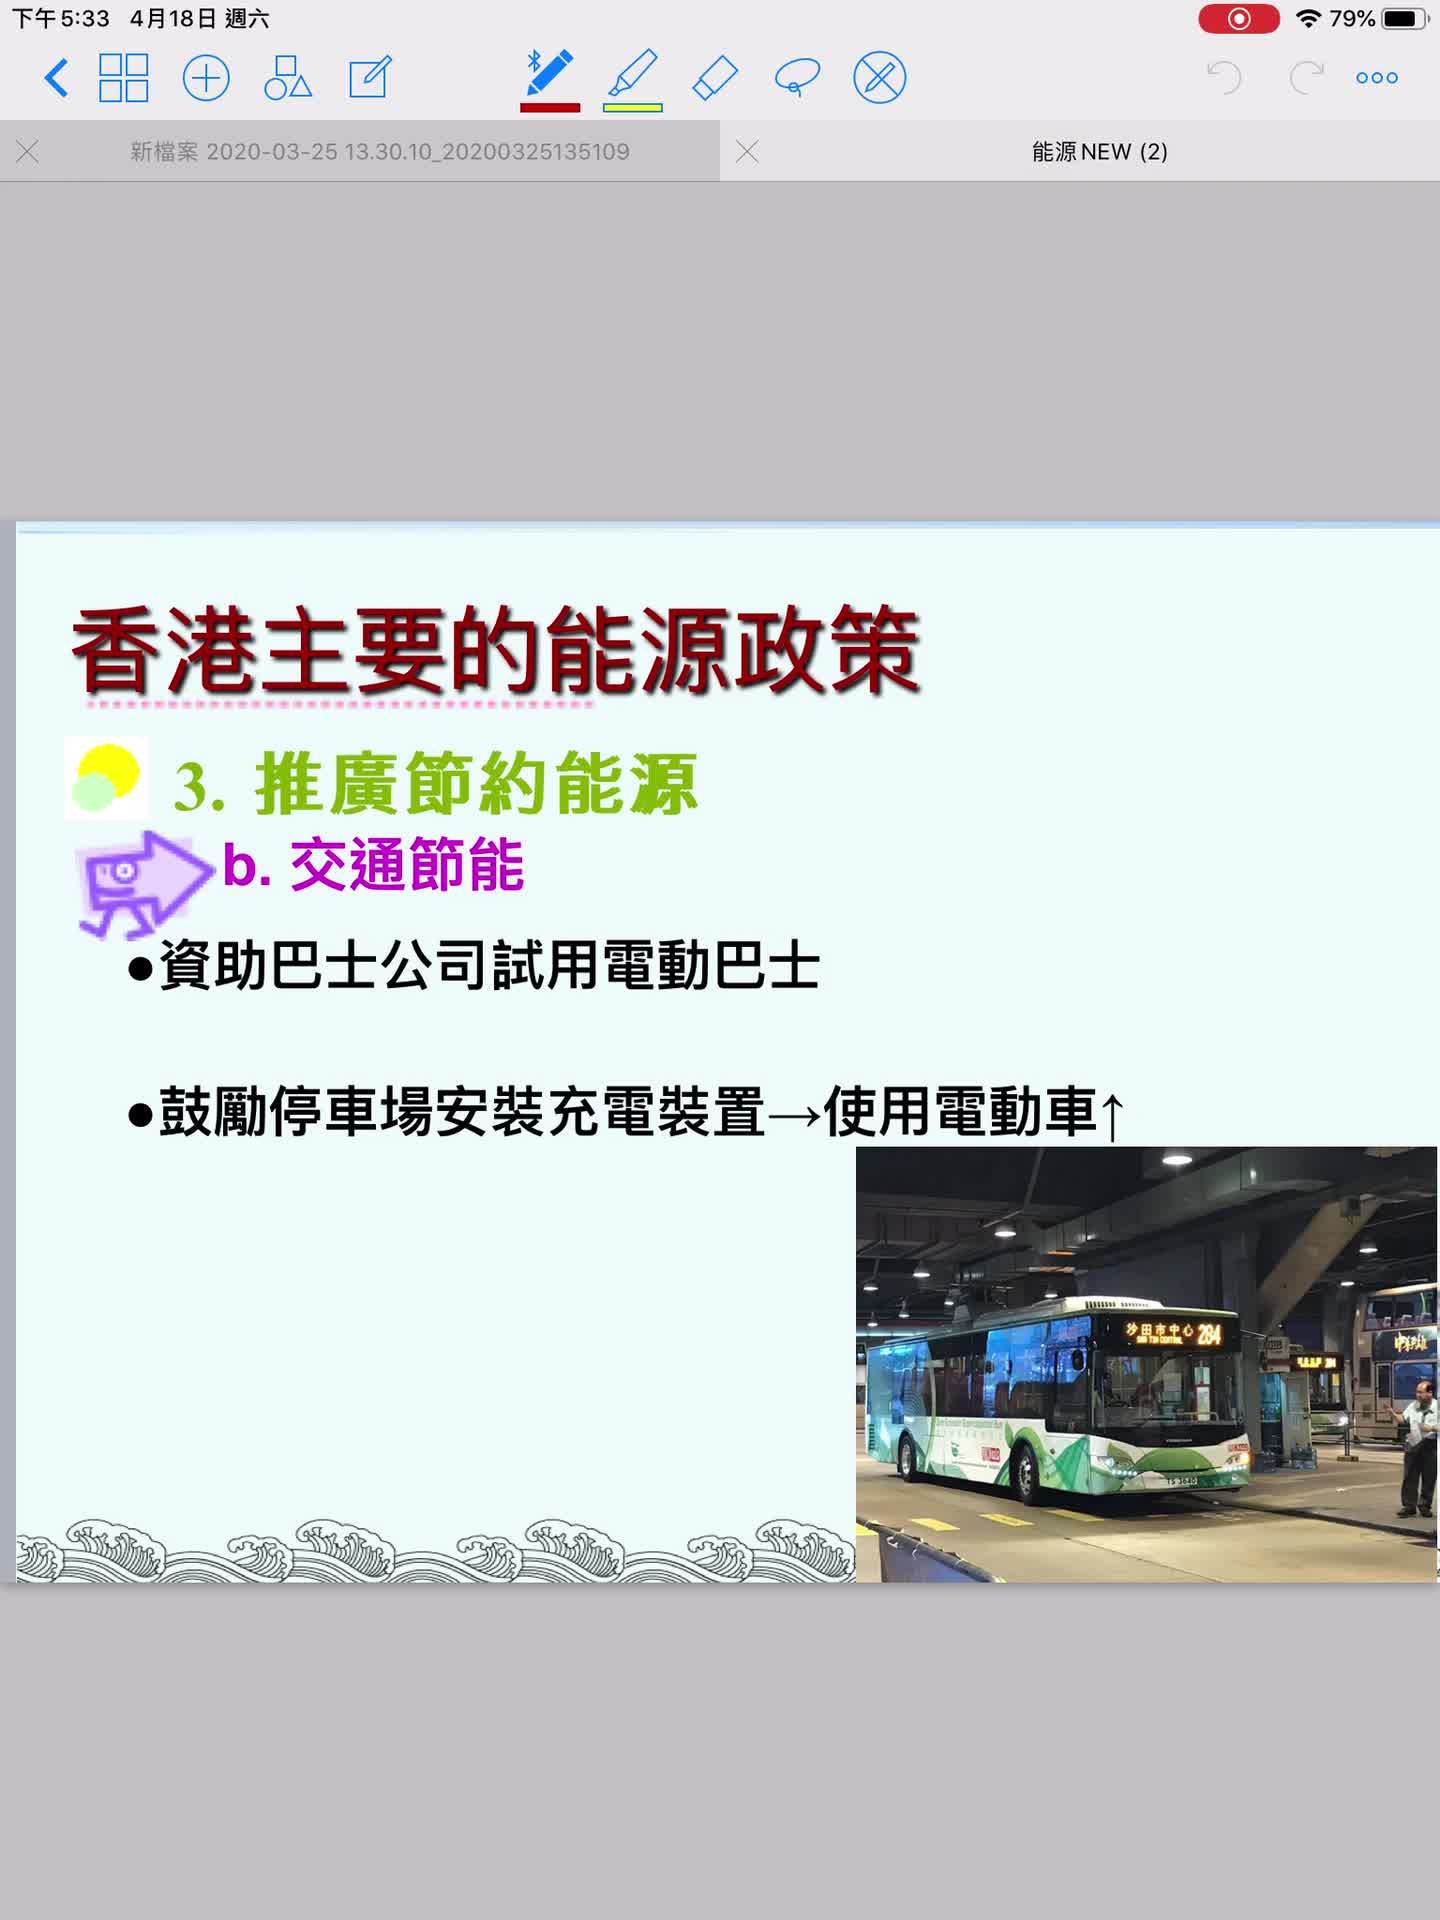 4- 香港主要的能源政策